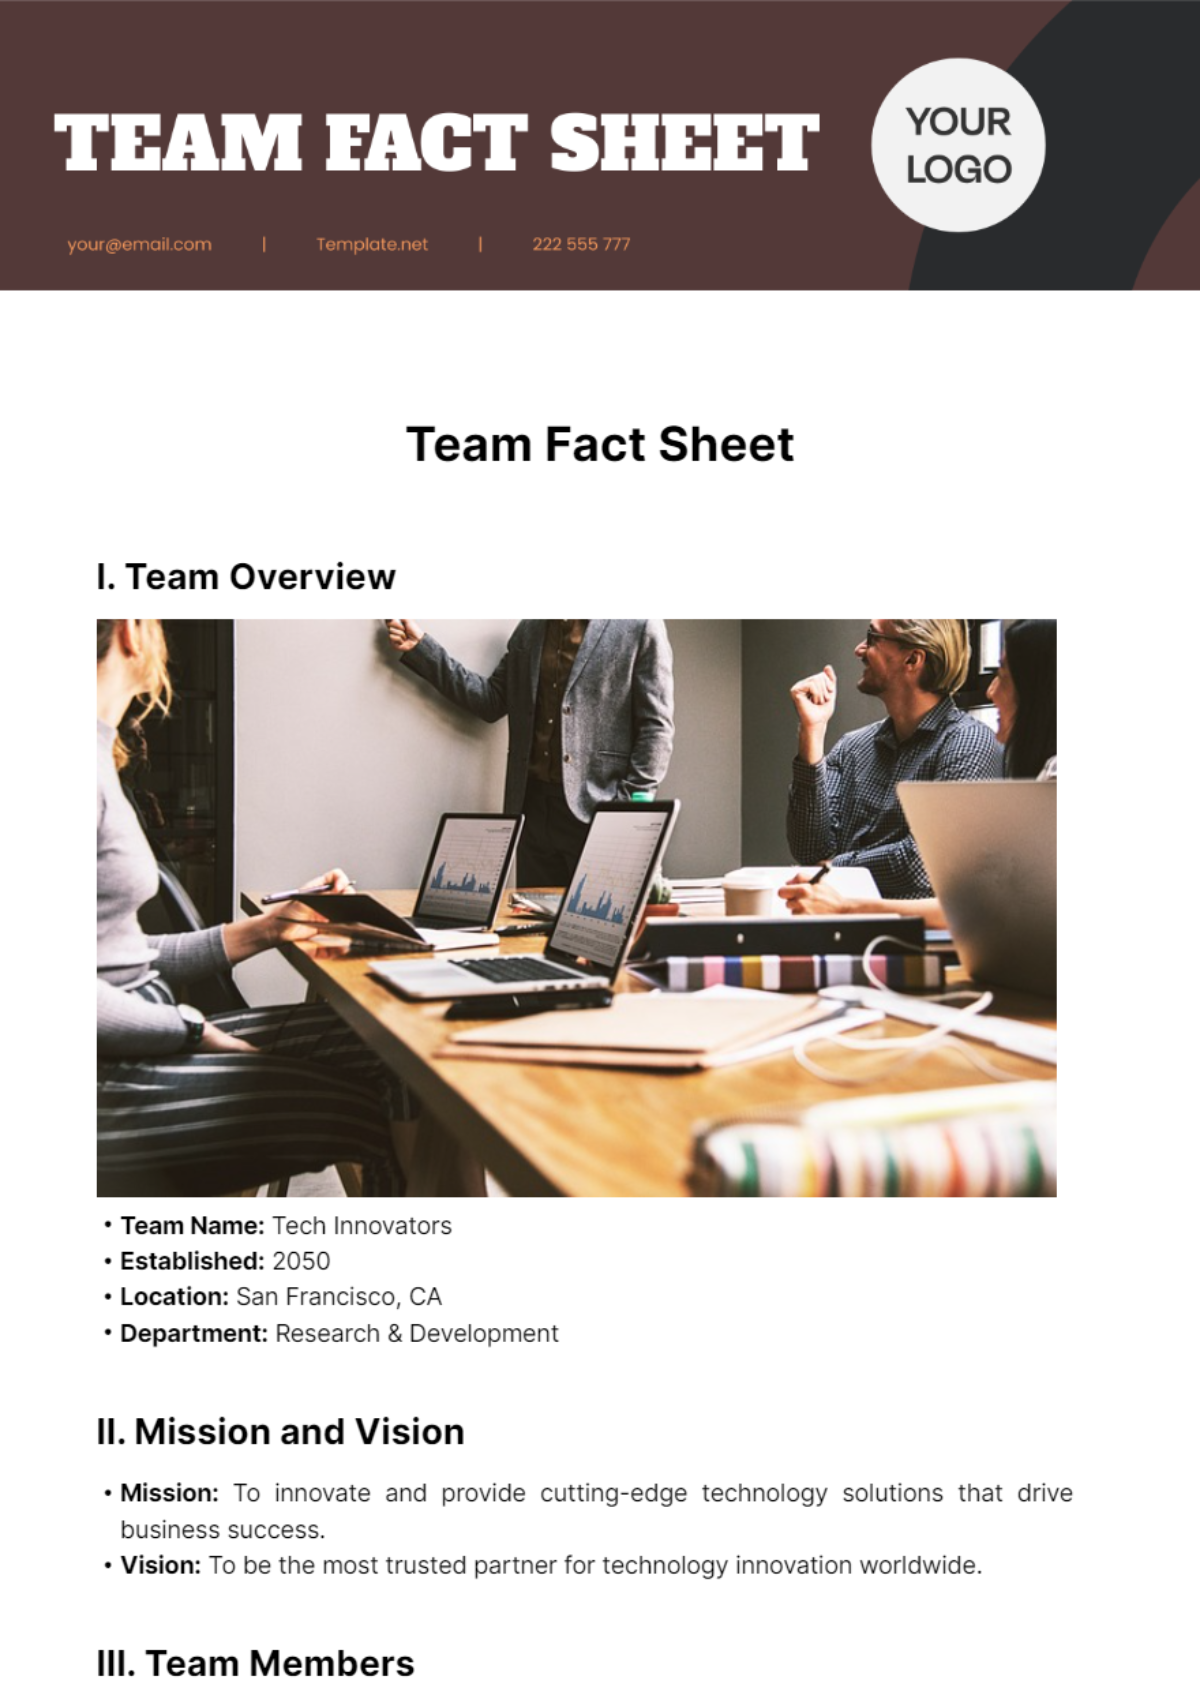 Team Fact Sheet Template